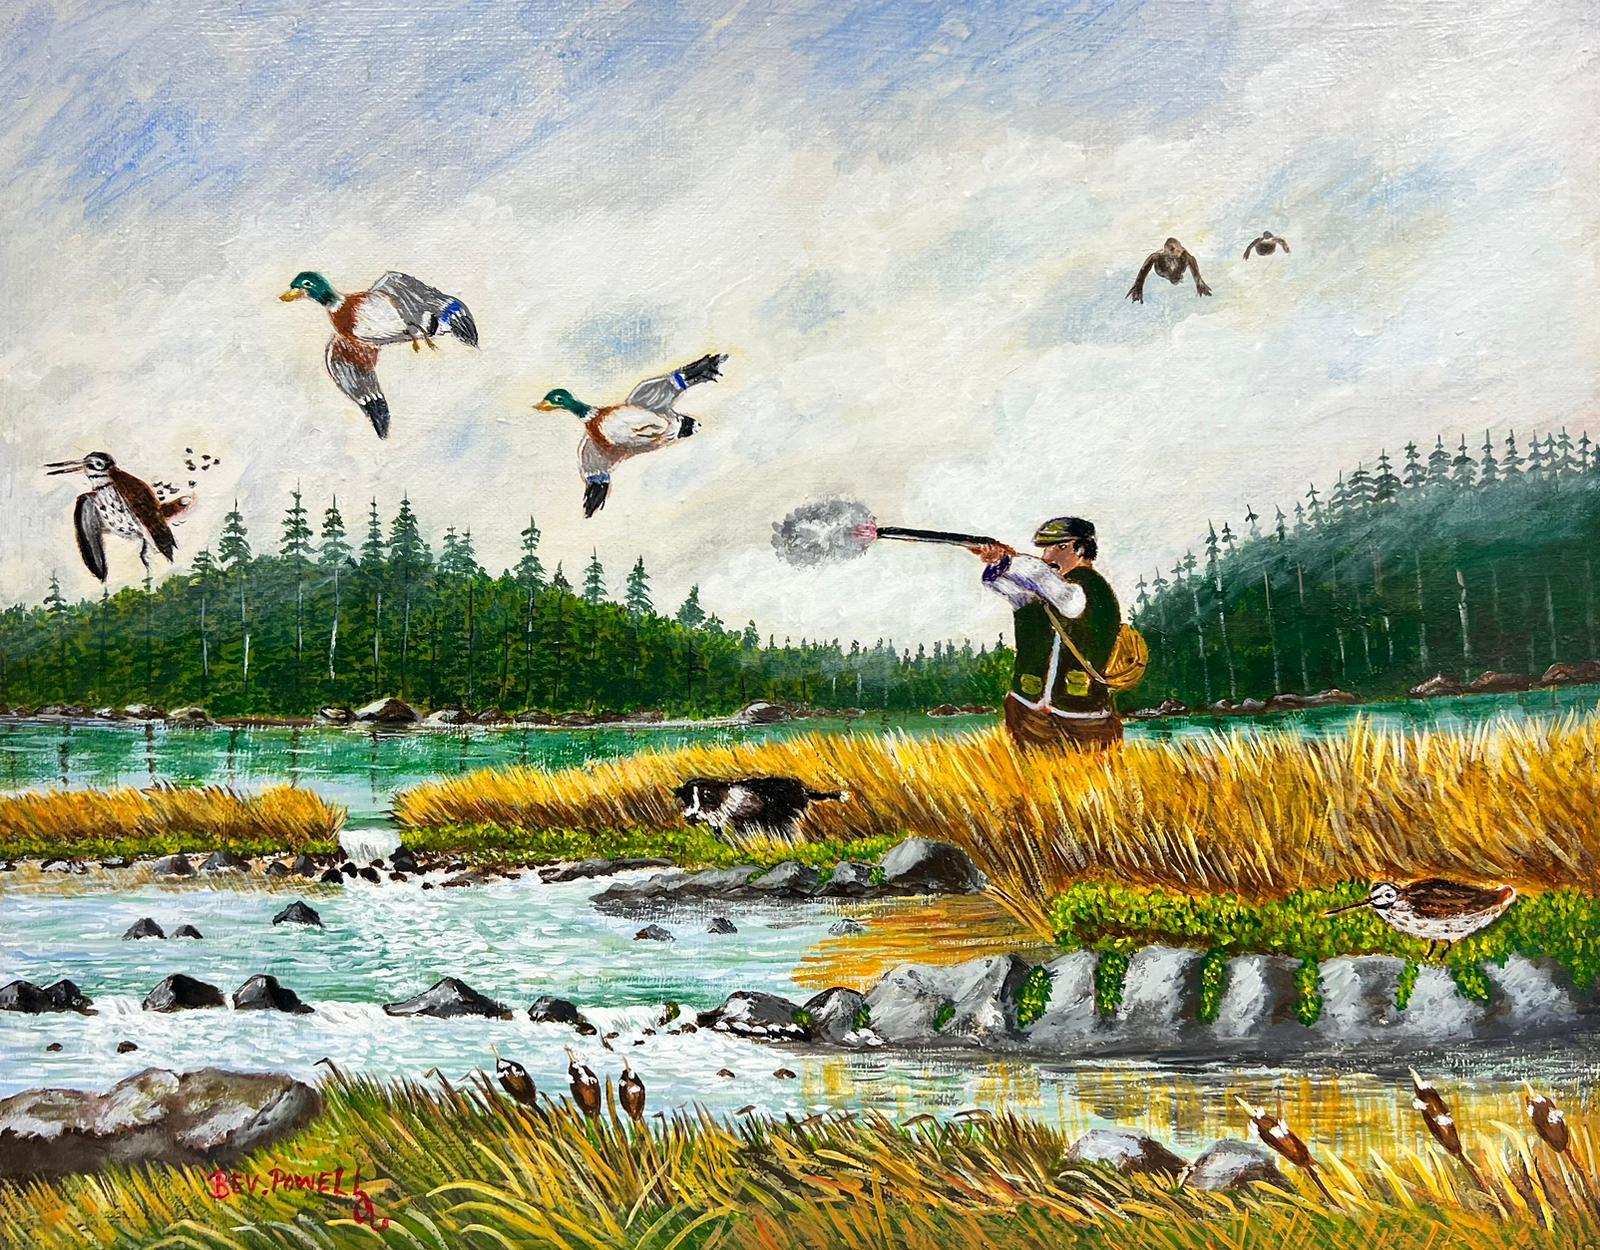 Landscape Painting Ben Powell - Peinture acrylique britannique contemporaine représentant un canard chasseur de chasse dans un paysage